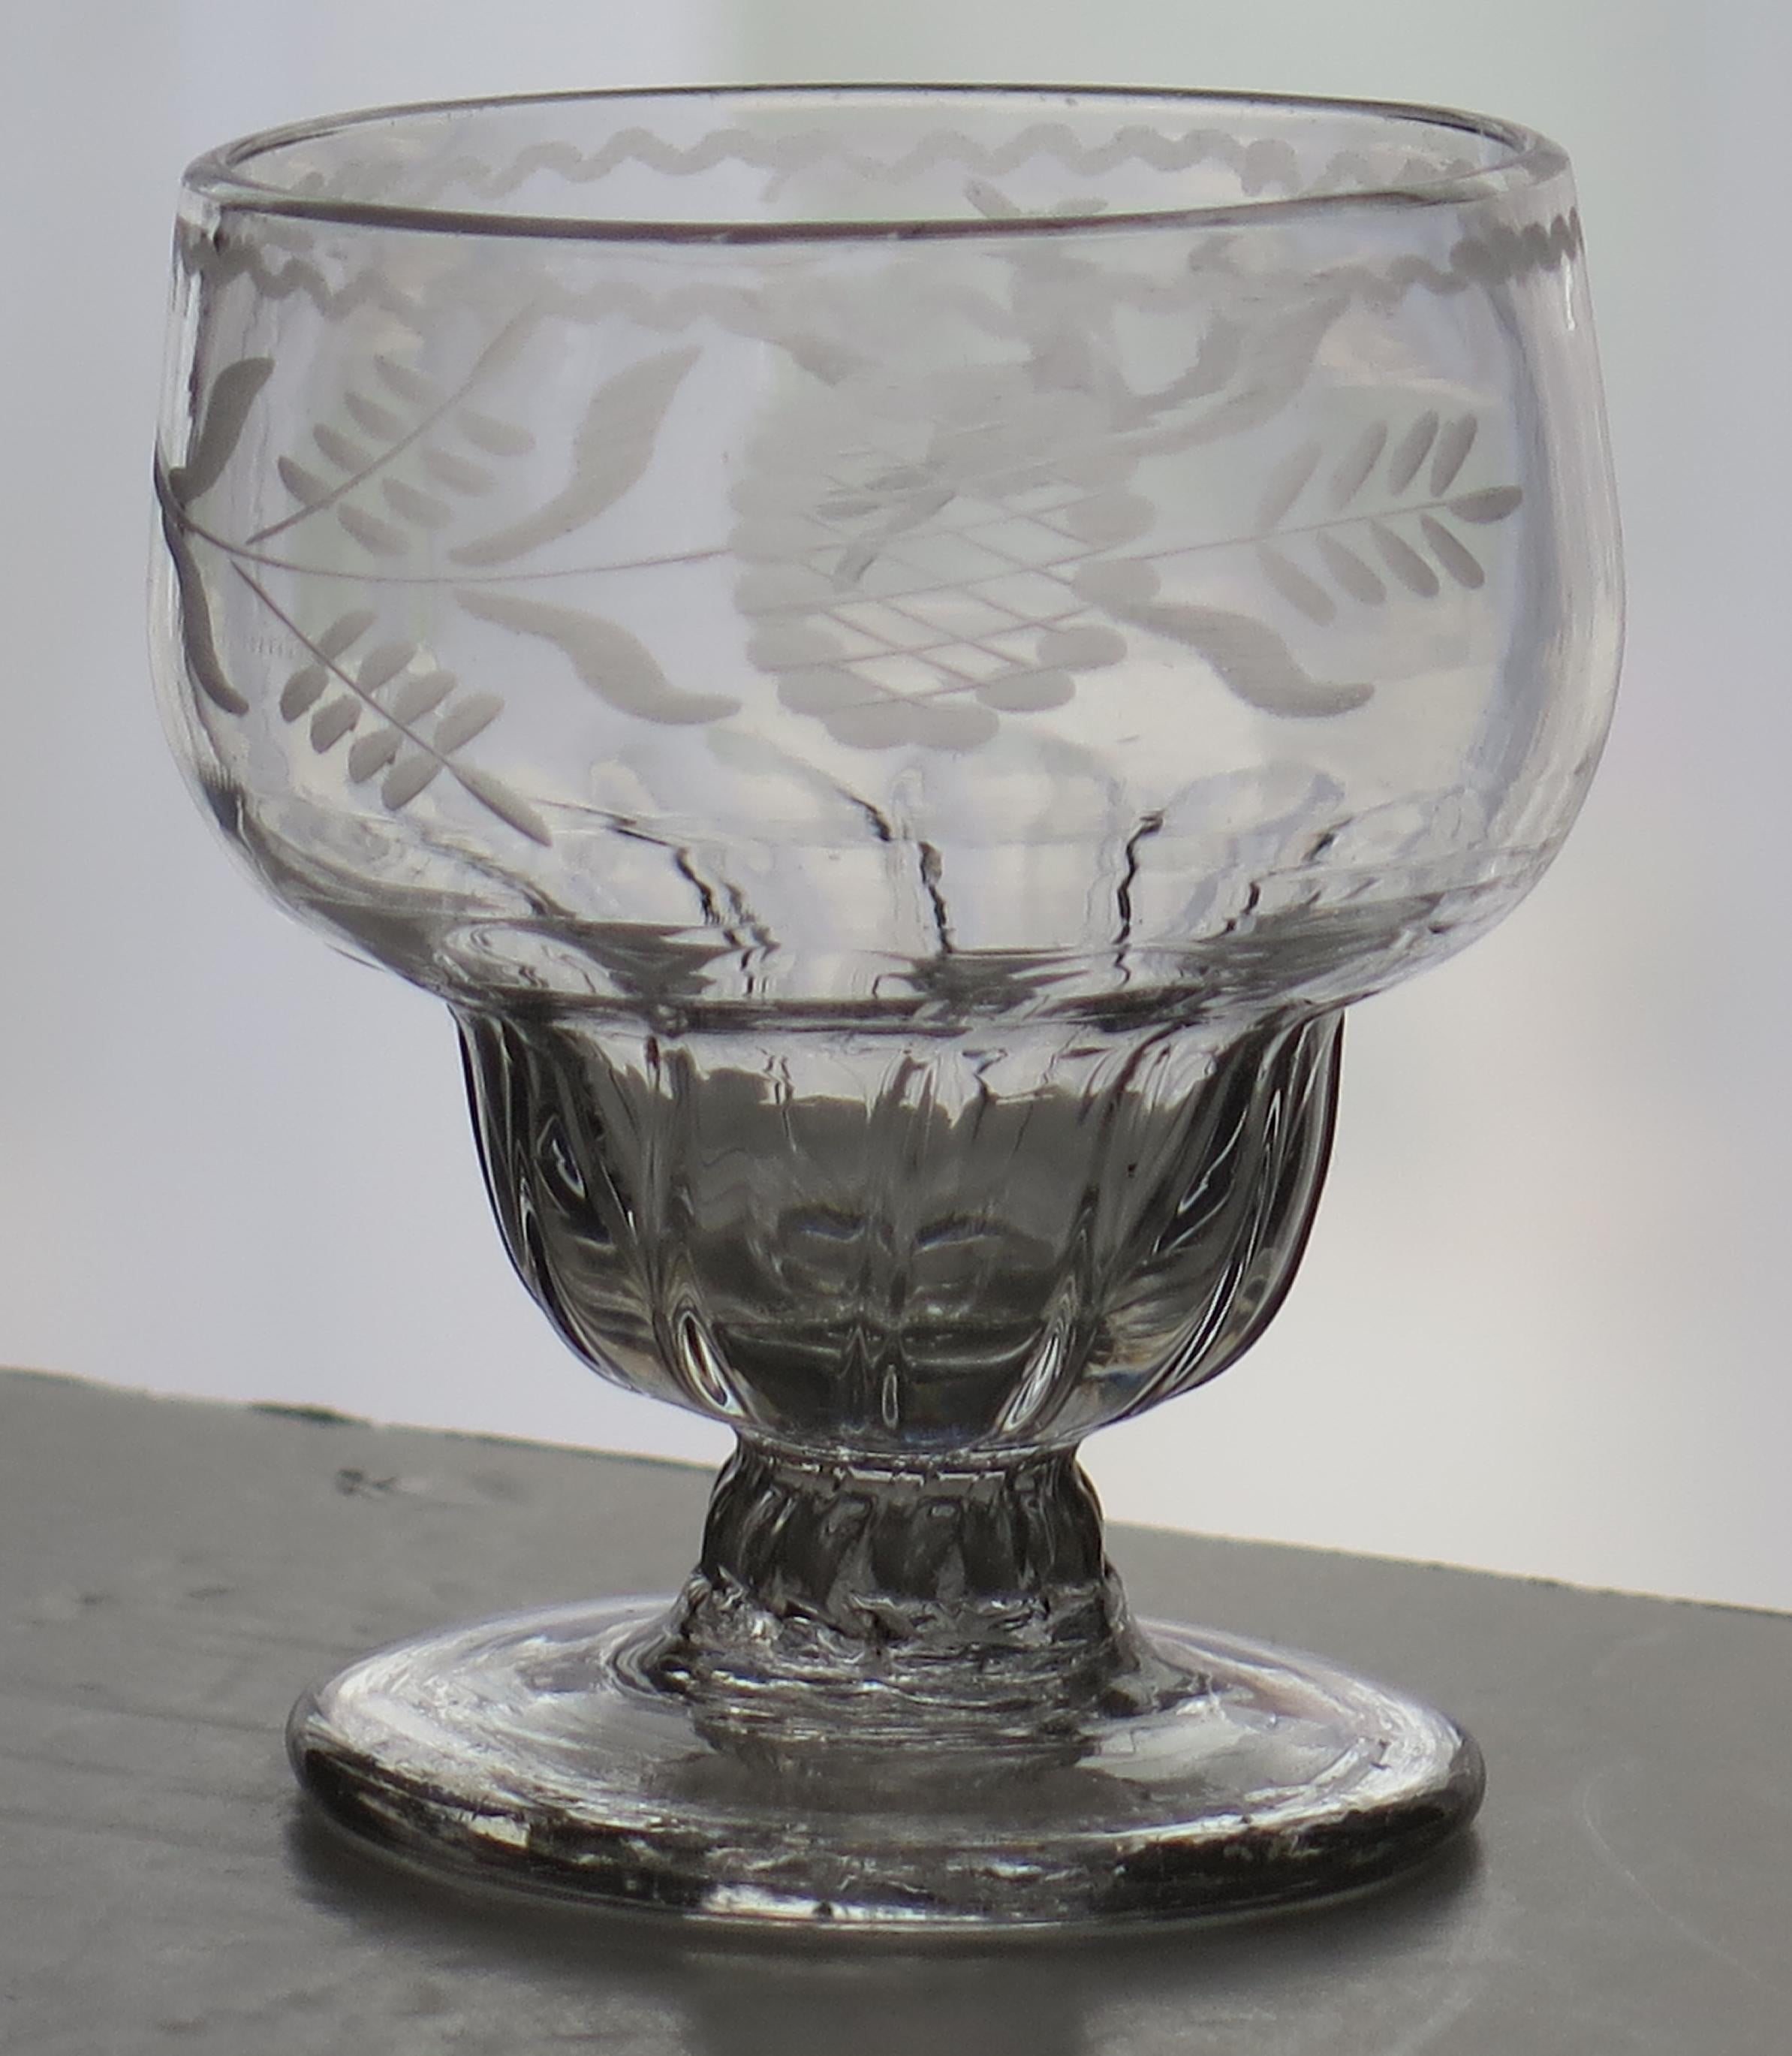 Es handelt sich um ein sehr gutes mundgeblasenes englisches, mittleres georgisches Monteith- oder Bonnet-Glas aus der Mitte des 18. Jahrhunderts, um 1750.

Es ist aus englischem Bleiglas gefertigt, das relativ schwer ist und eine weiche graue